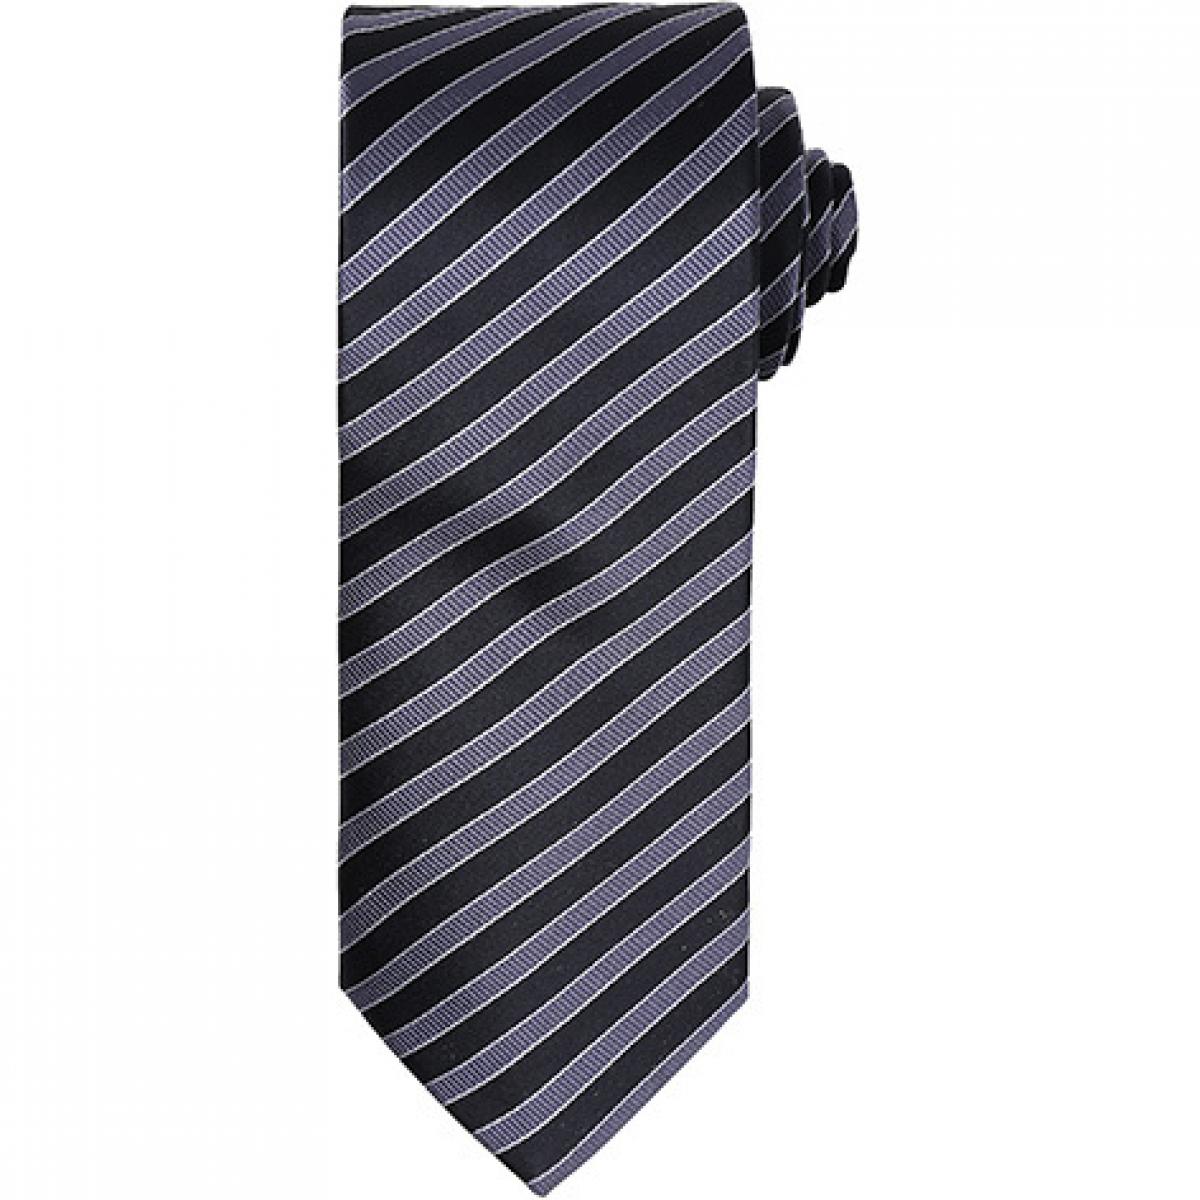 Hersteller: Premier Workwear Herstellernummer: PR782 Artikelbezeichnung: Double Stripe Tie / Breite 3" / 7,5 cm / Länge 57" / 144 cm Farbe: Black/Dark Grey